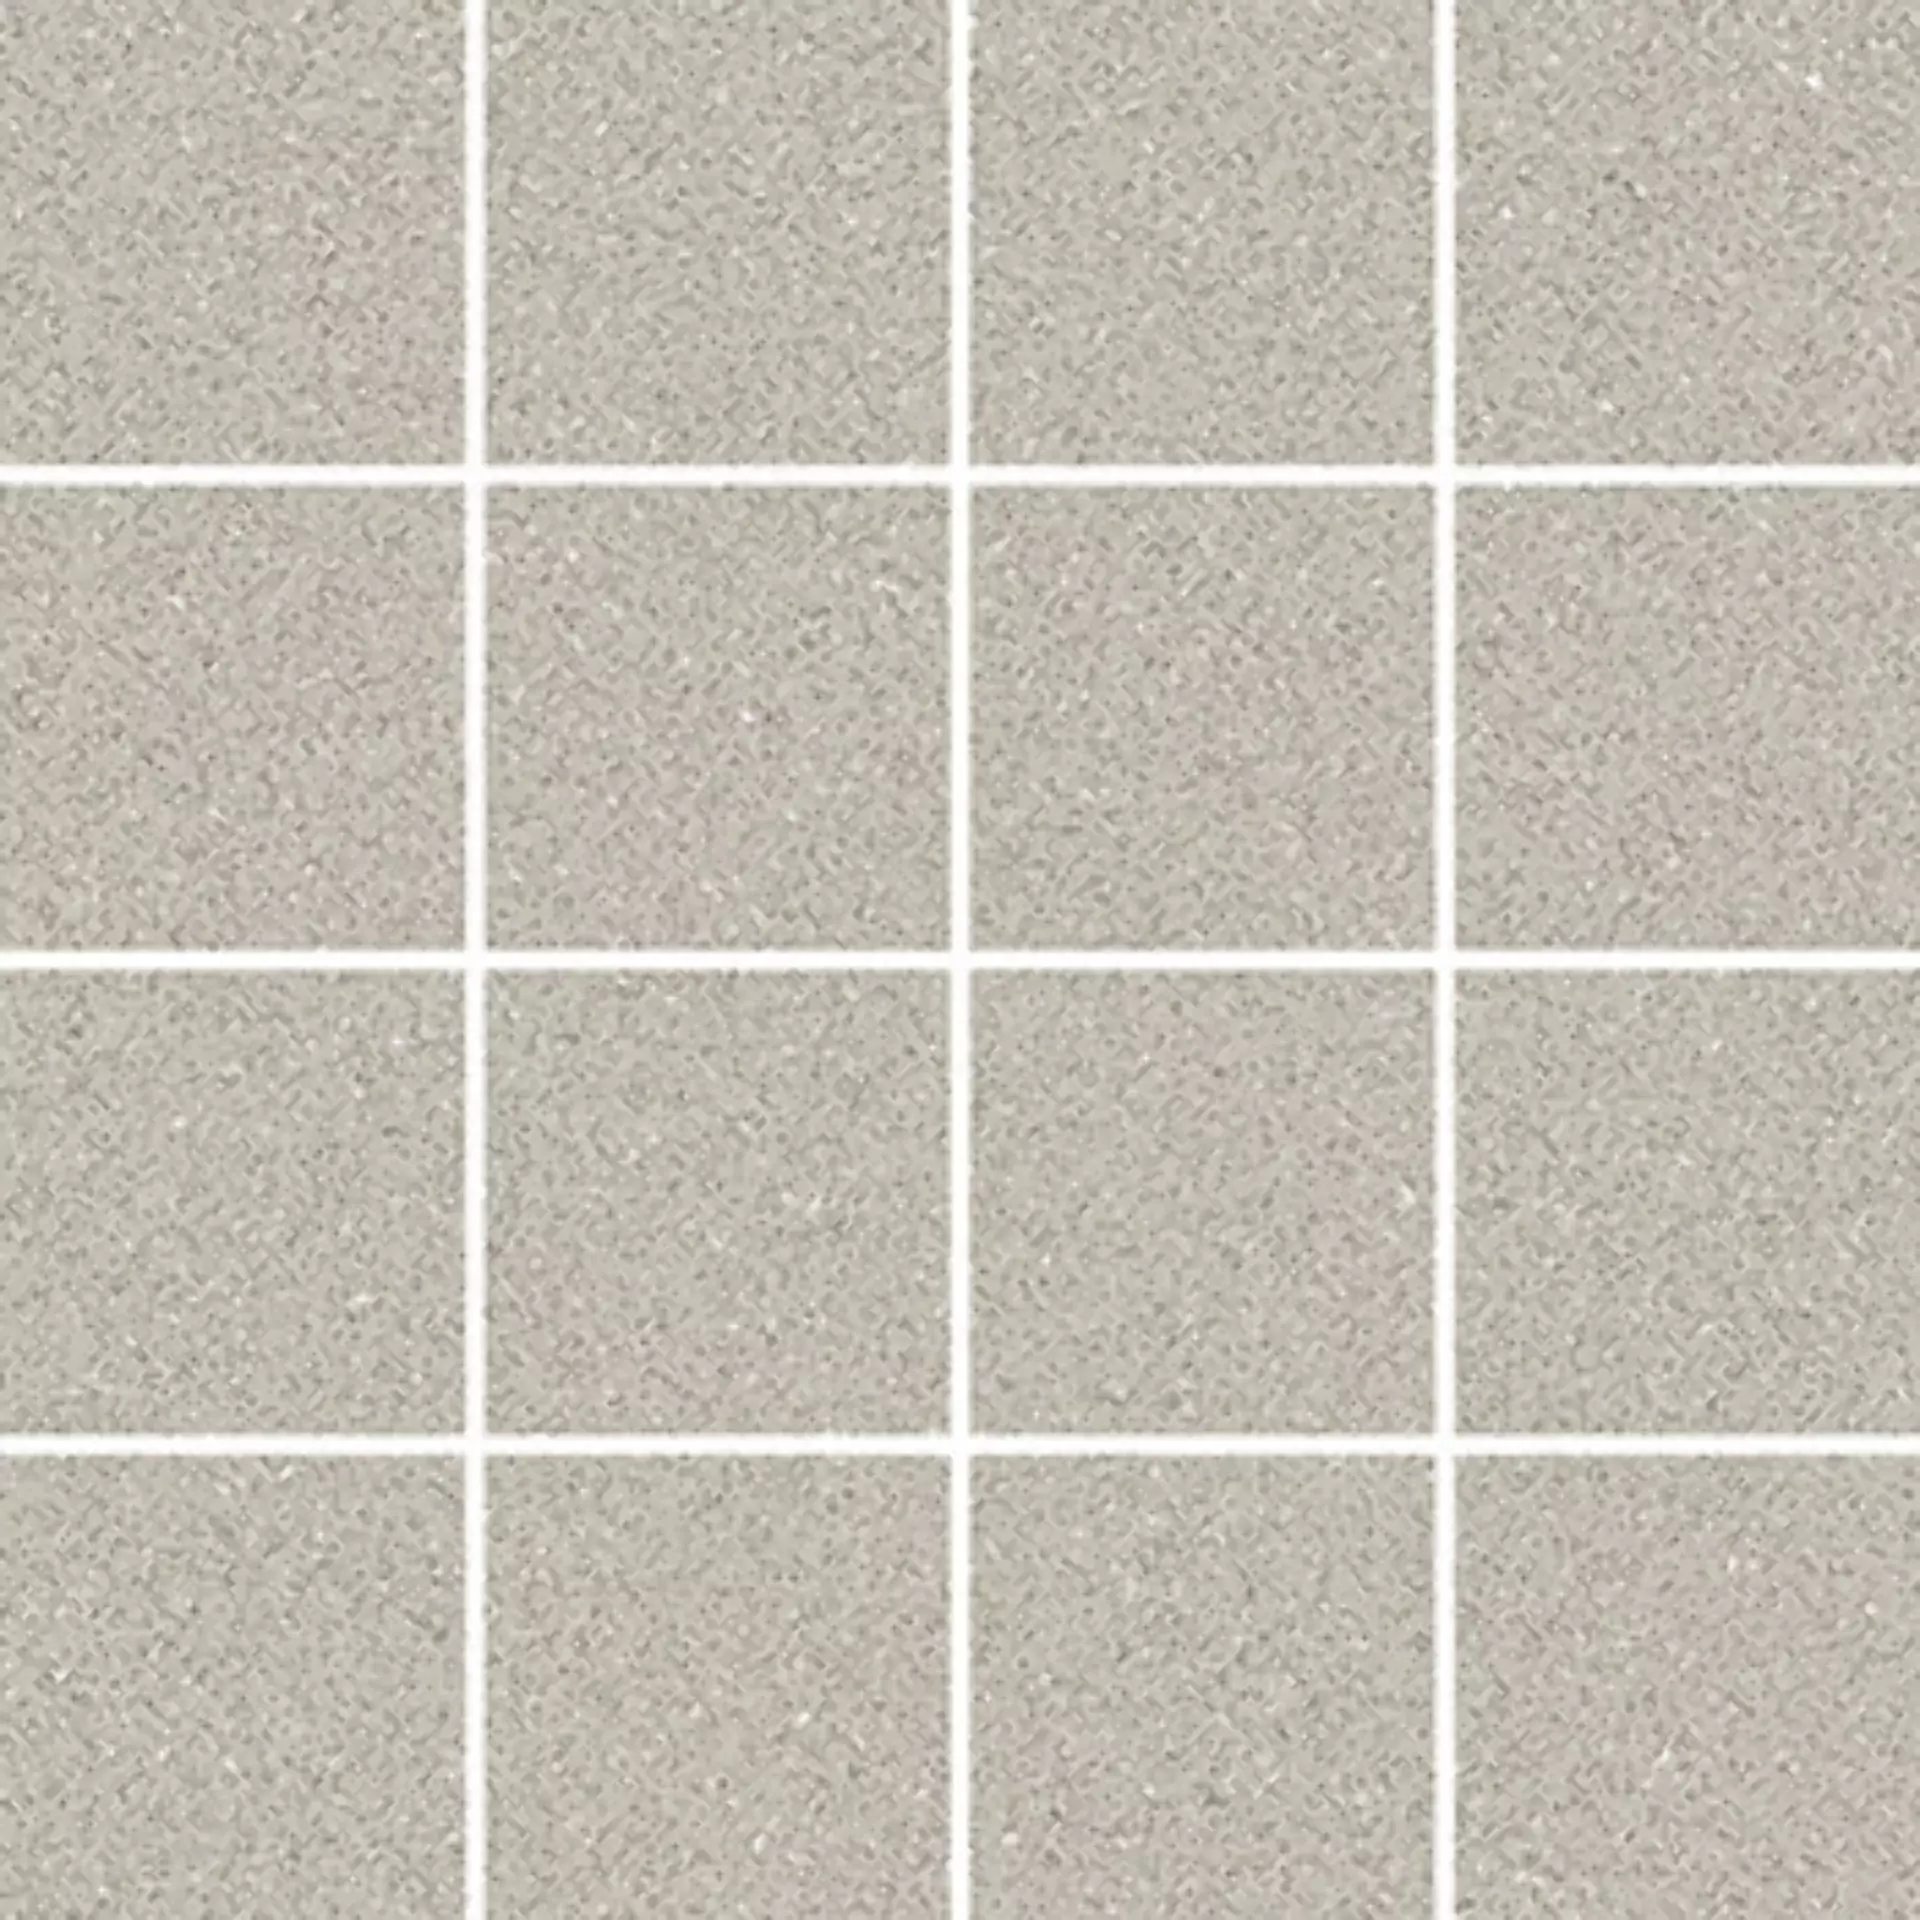 Villeroy & Boch Pure Line 2.0 Foggy Grey Matt Mosaic (7,5x7,5) 2013-UL60 7,5x7,5cm rectified 12mm